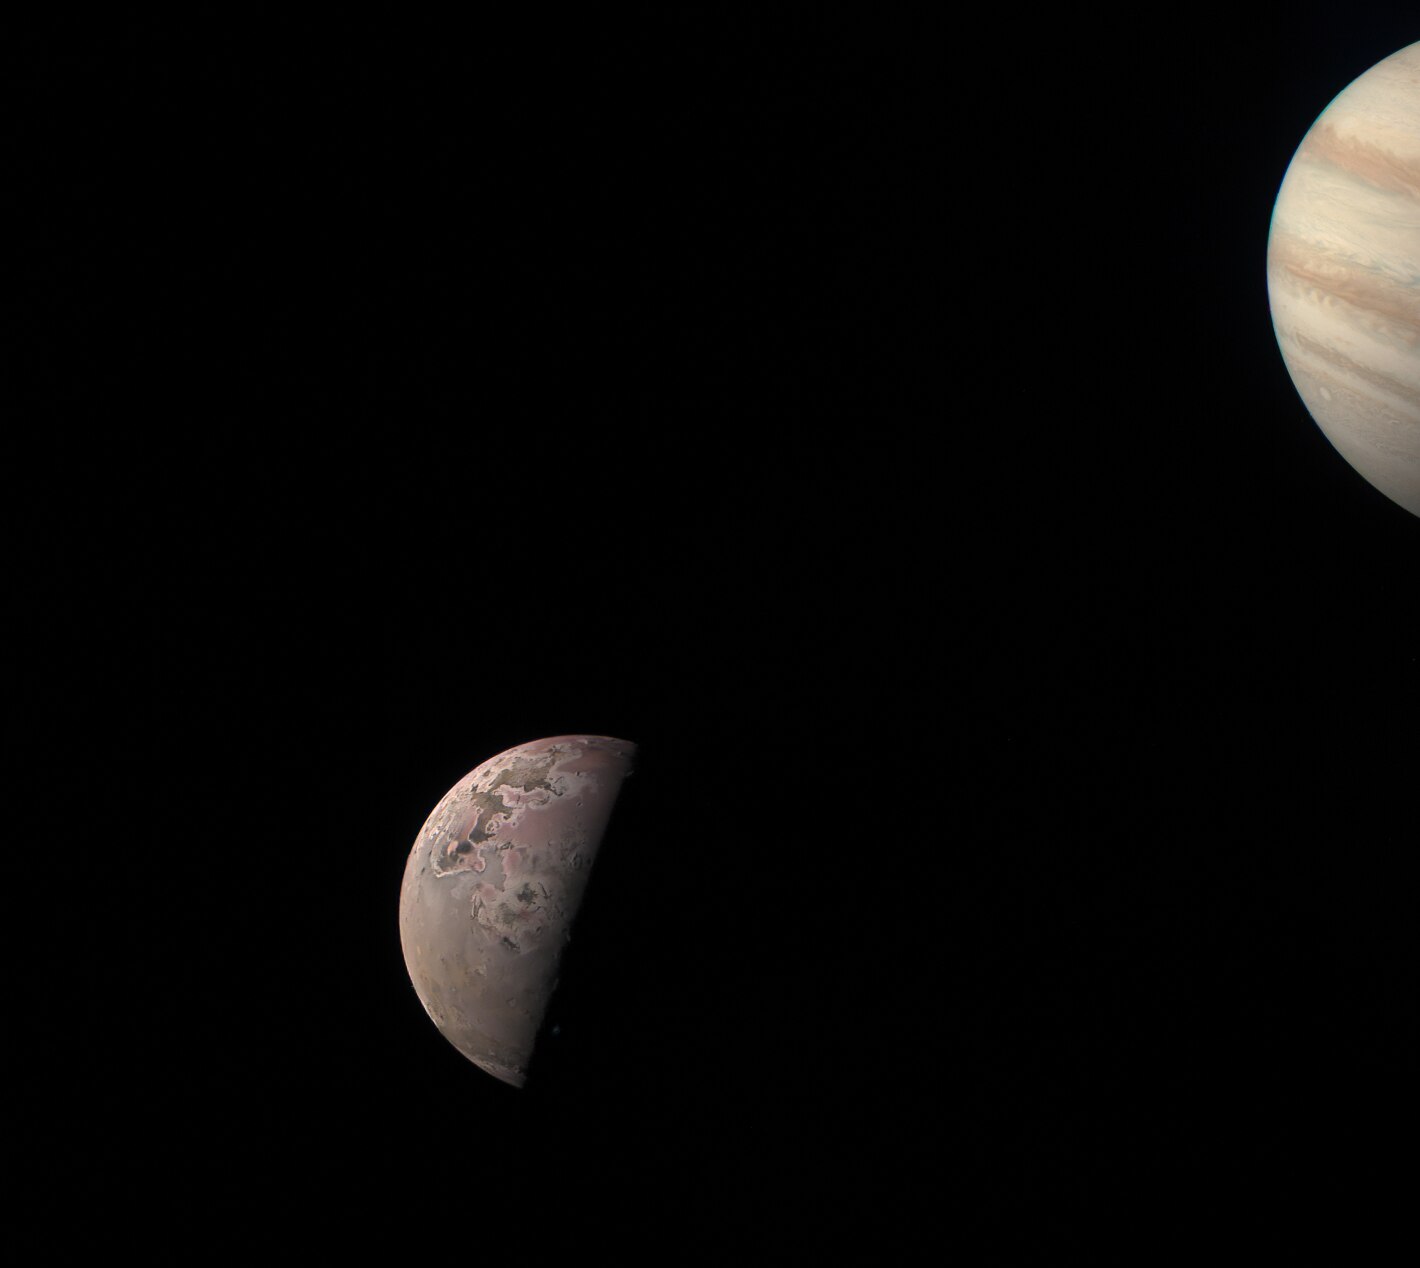 NASA'nın Juno sondası tarafından çekilen görüntülerde sol altta Io ve sağ üstte Jüpiter görülüyor.